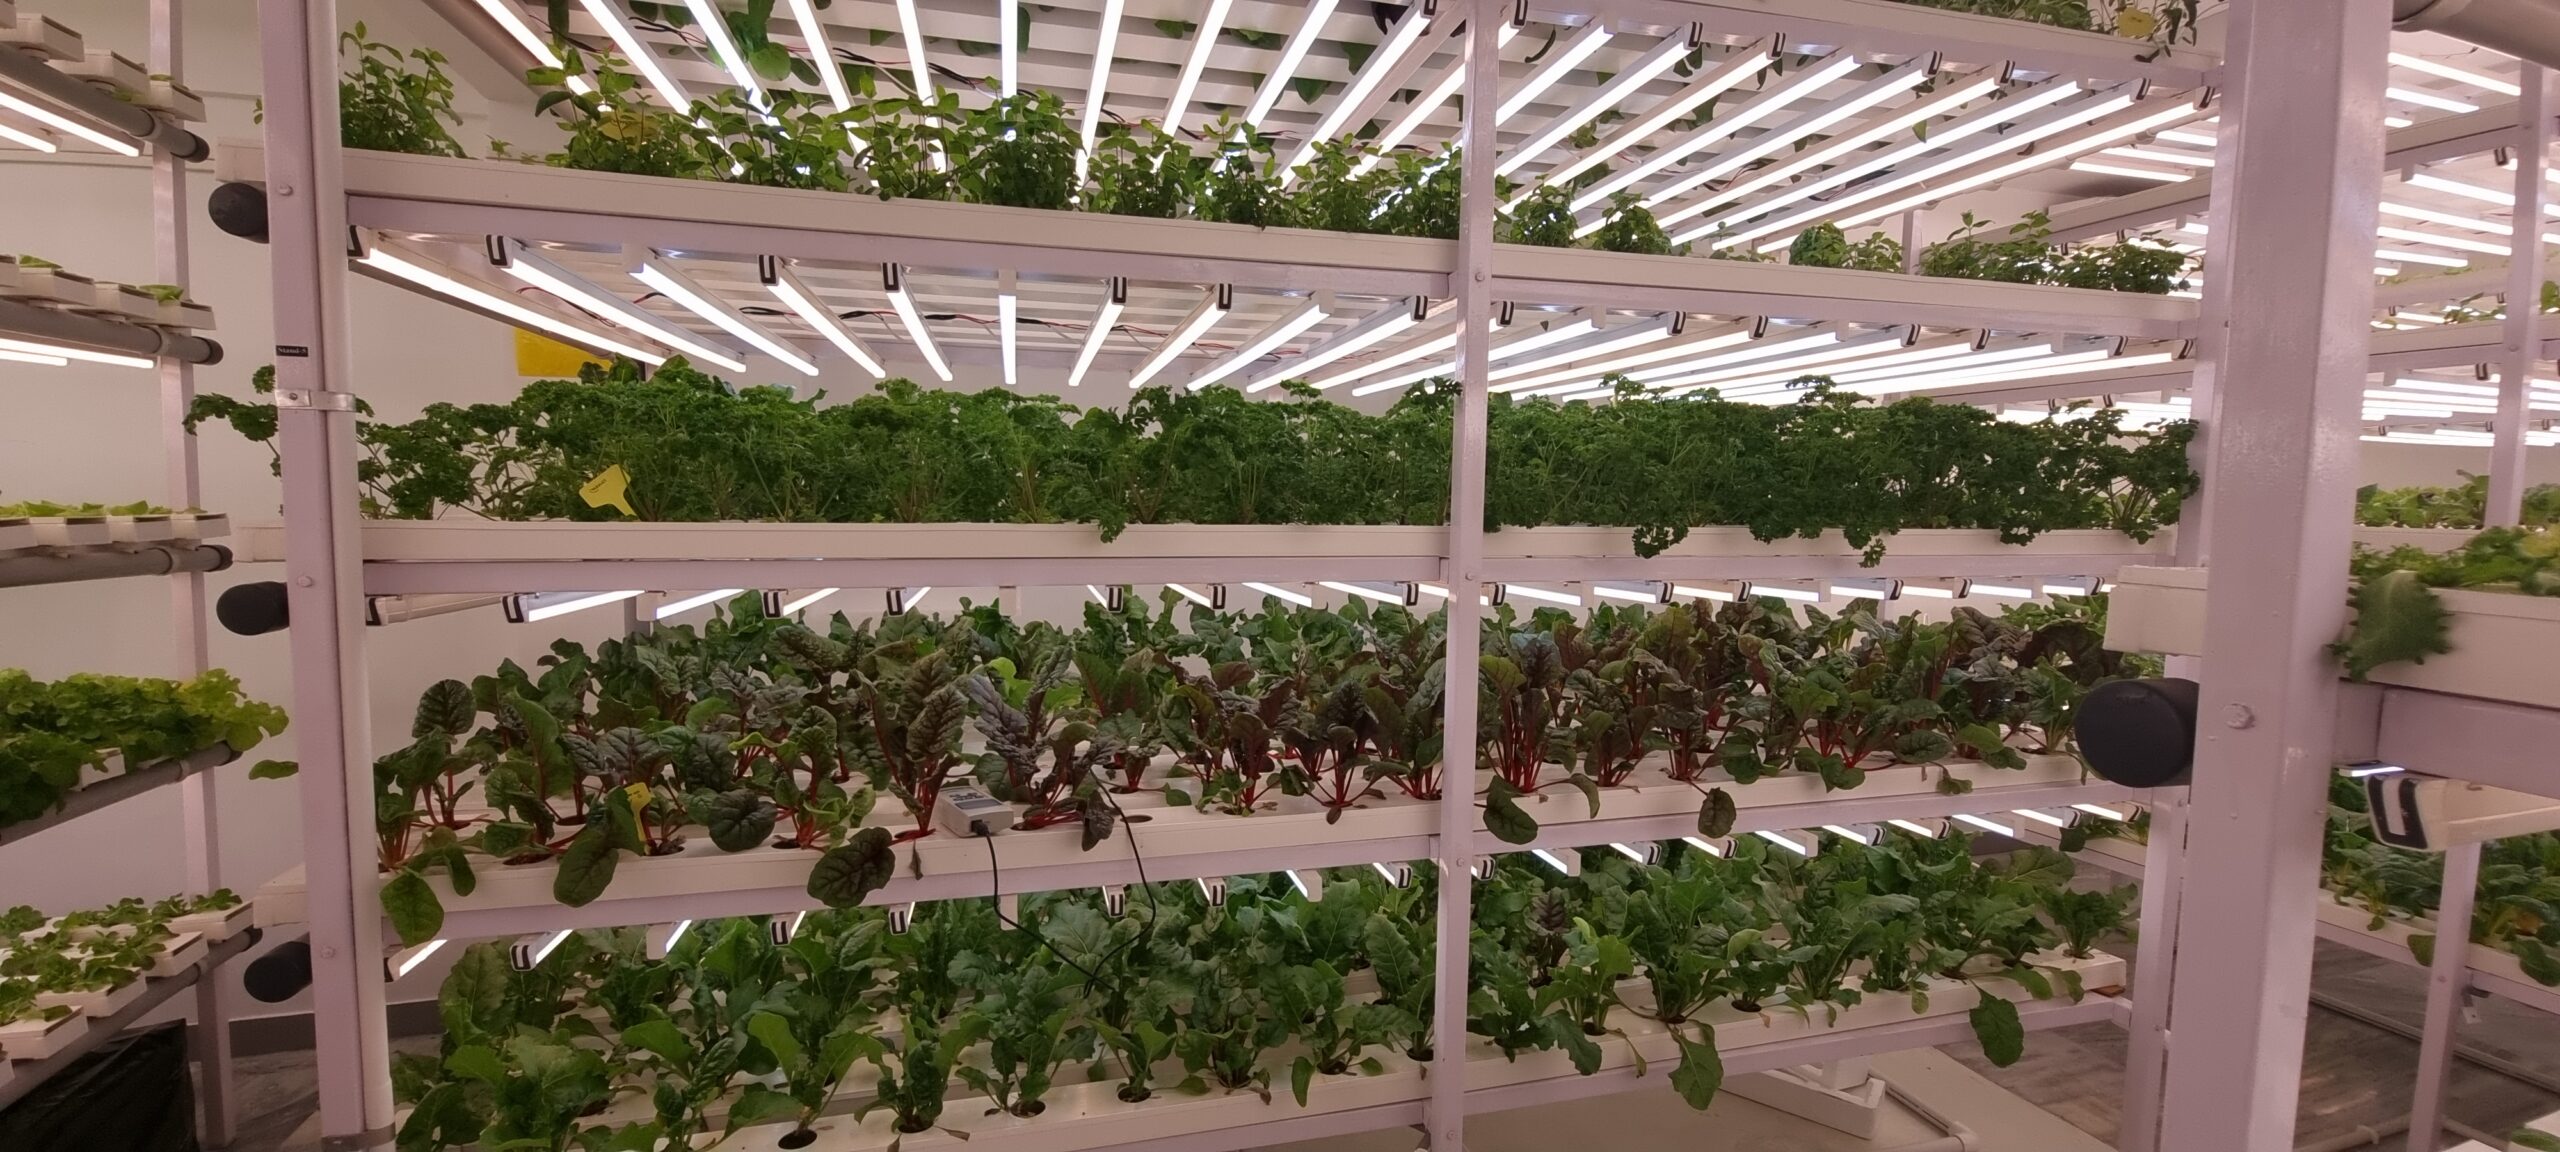 indoor hydroponics firm